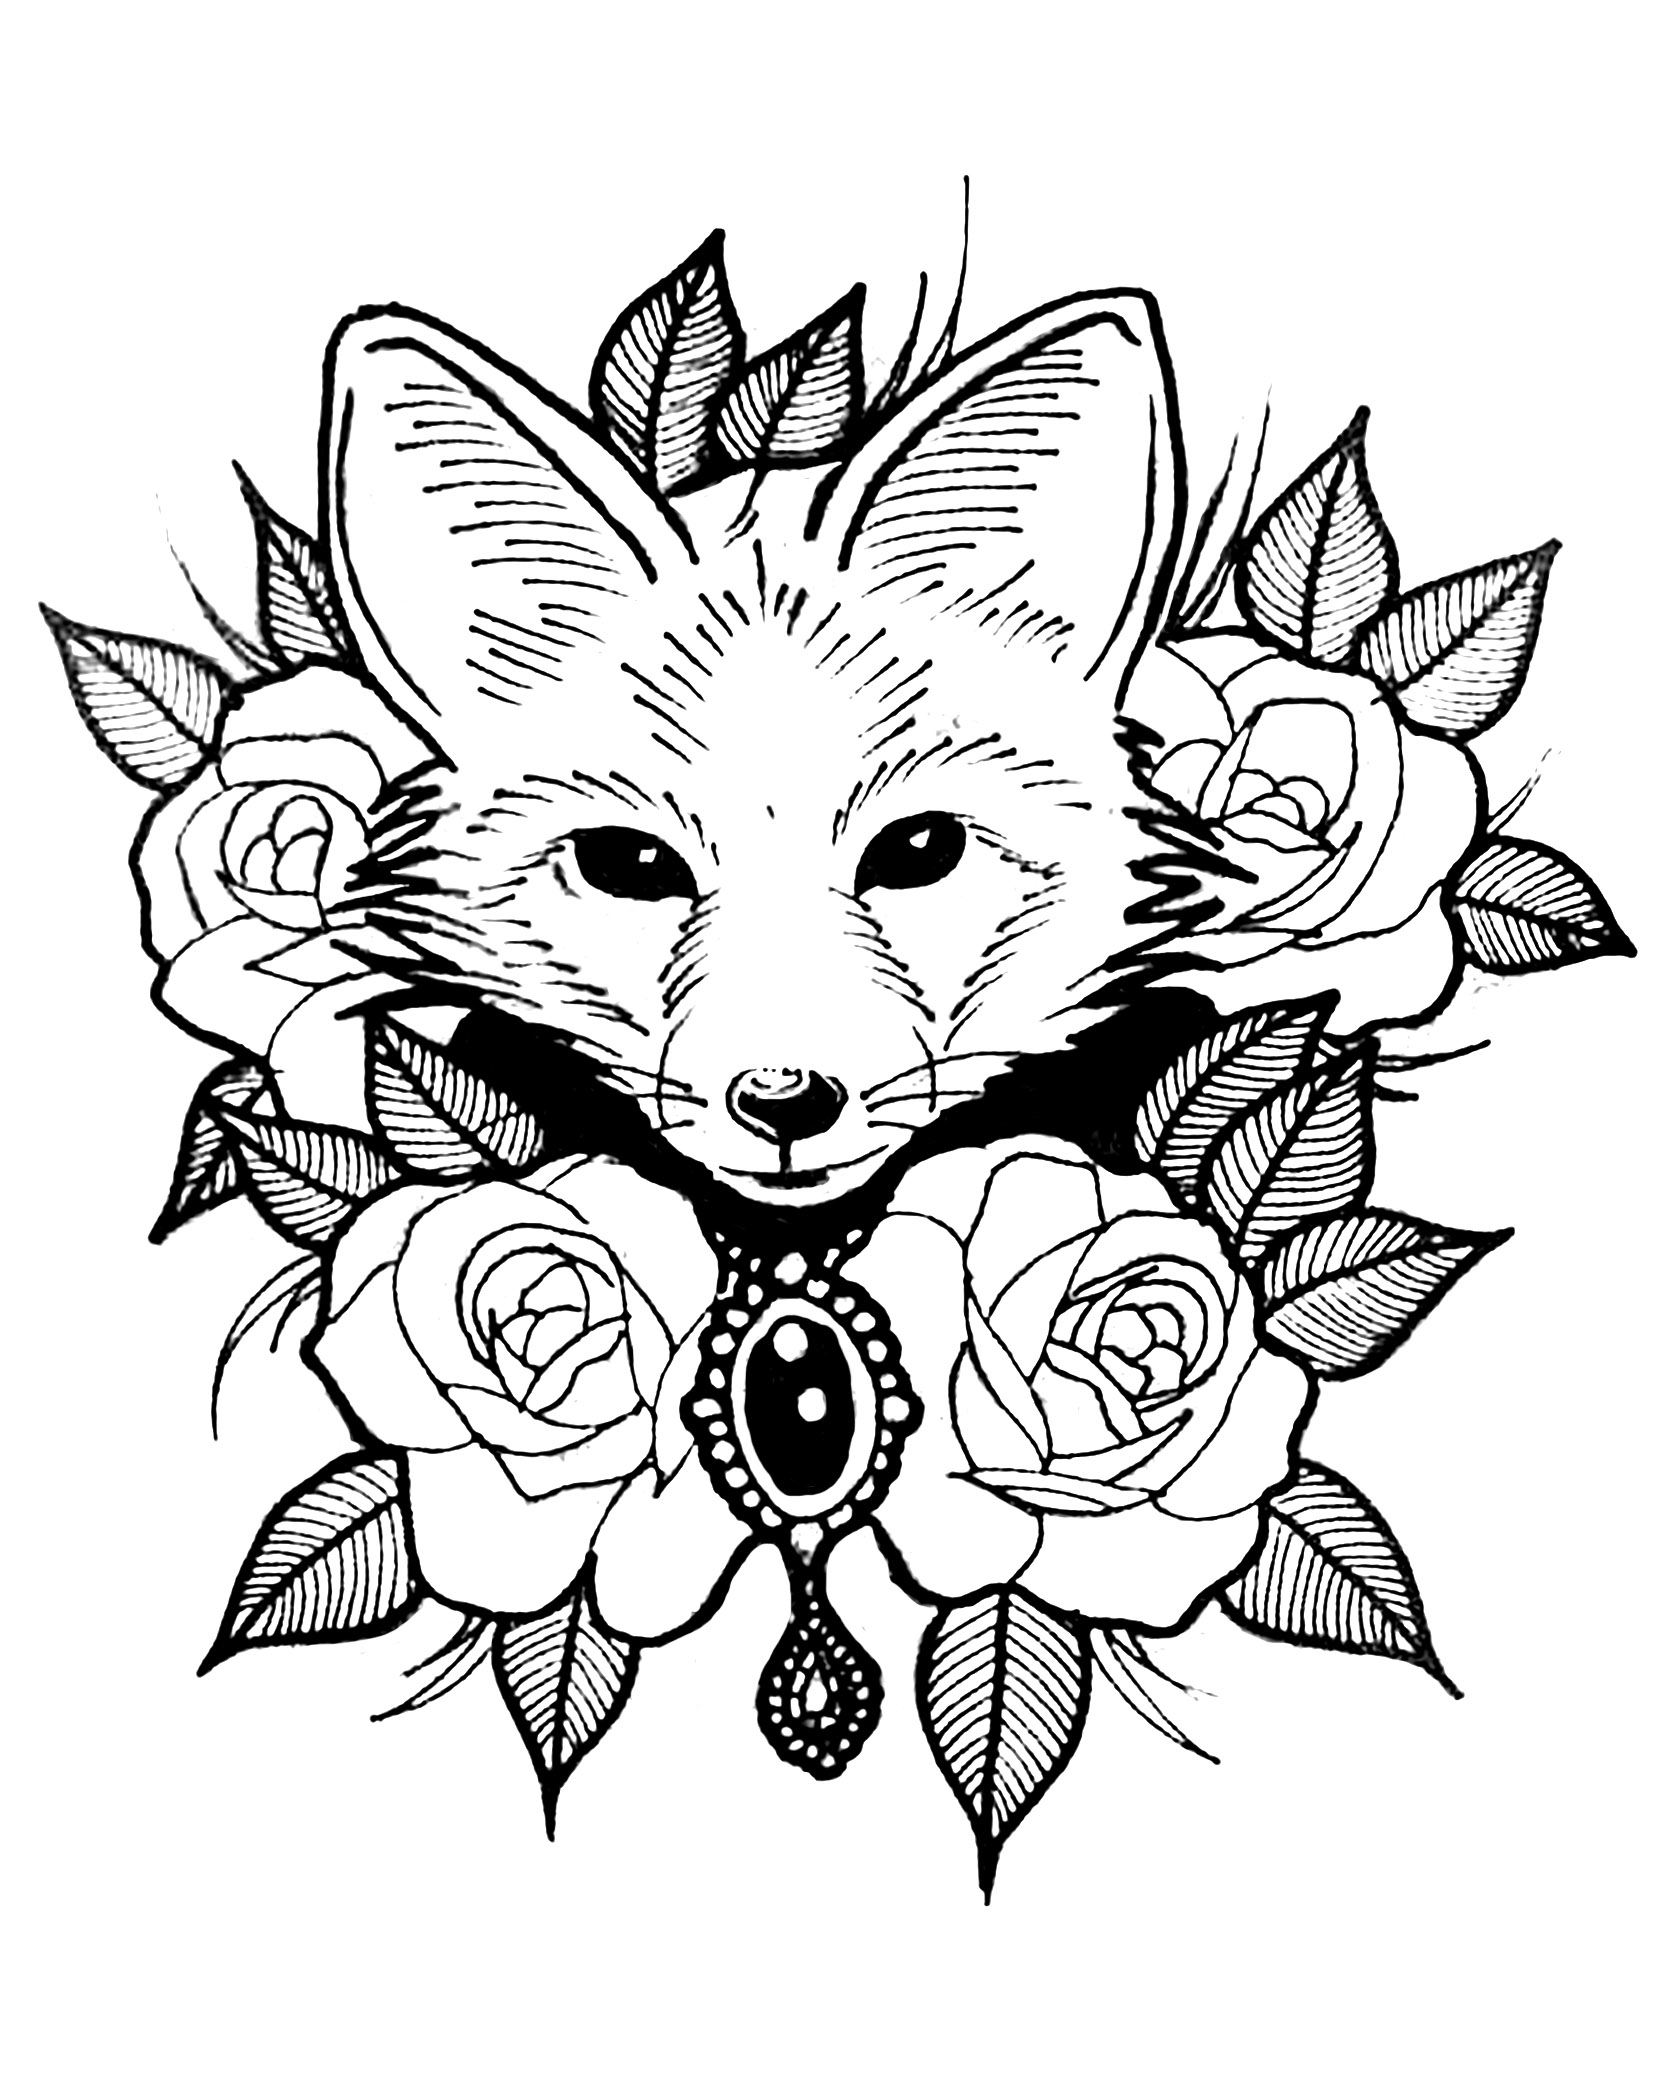 Raposa e rosas. Um belo desenho de tatuagem que combina o mundo animal e o mundo vegetal